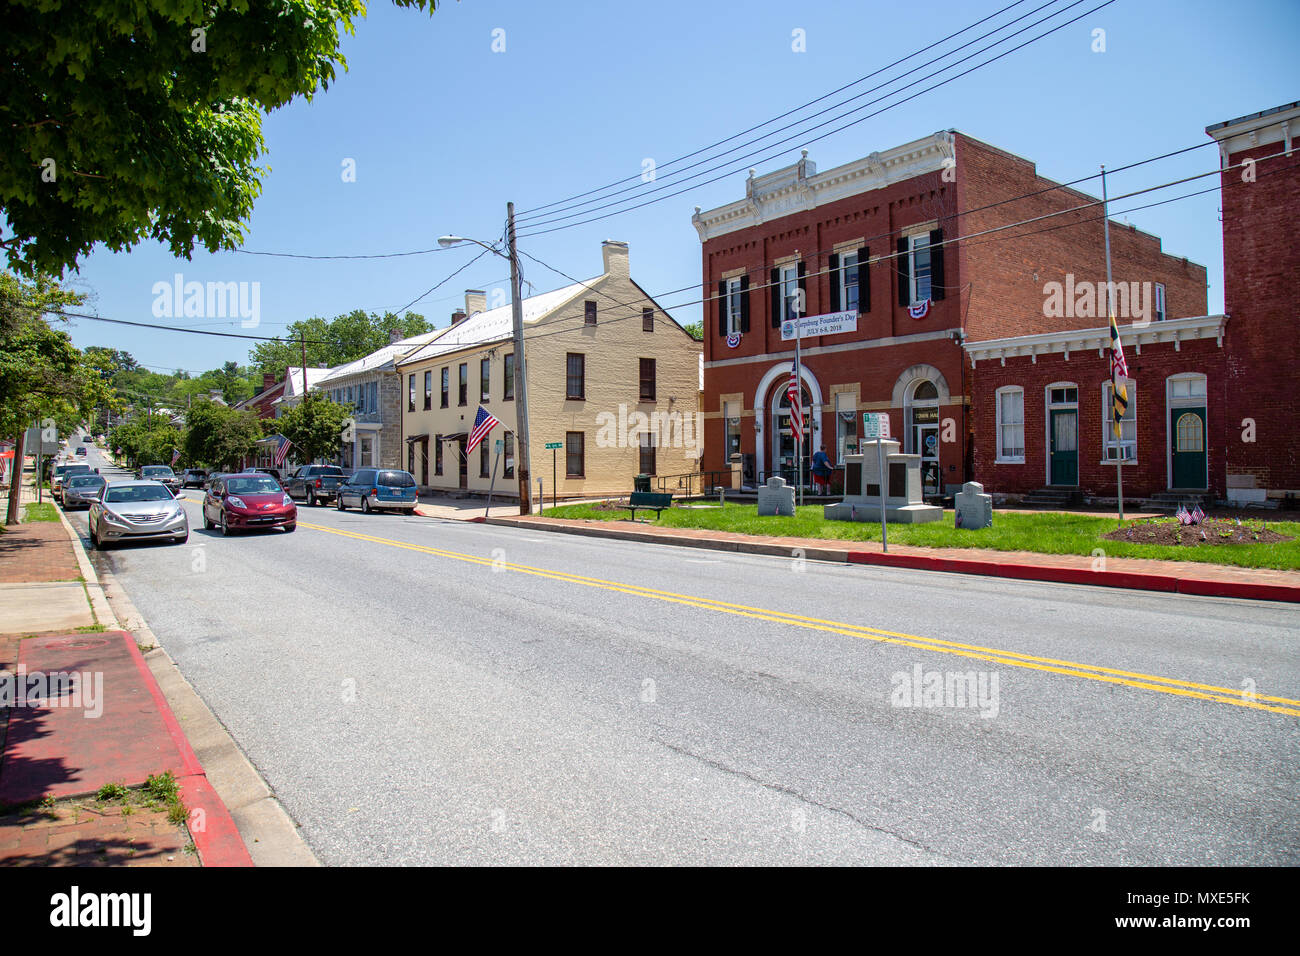 Sharpsburg, MD, USA - Le 24 mai 2018 : La rue principale de Sharpsburg est une ville historique et pittoresque, connu pour sa proximité d'Antietam, le site o Banque D'Images